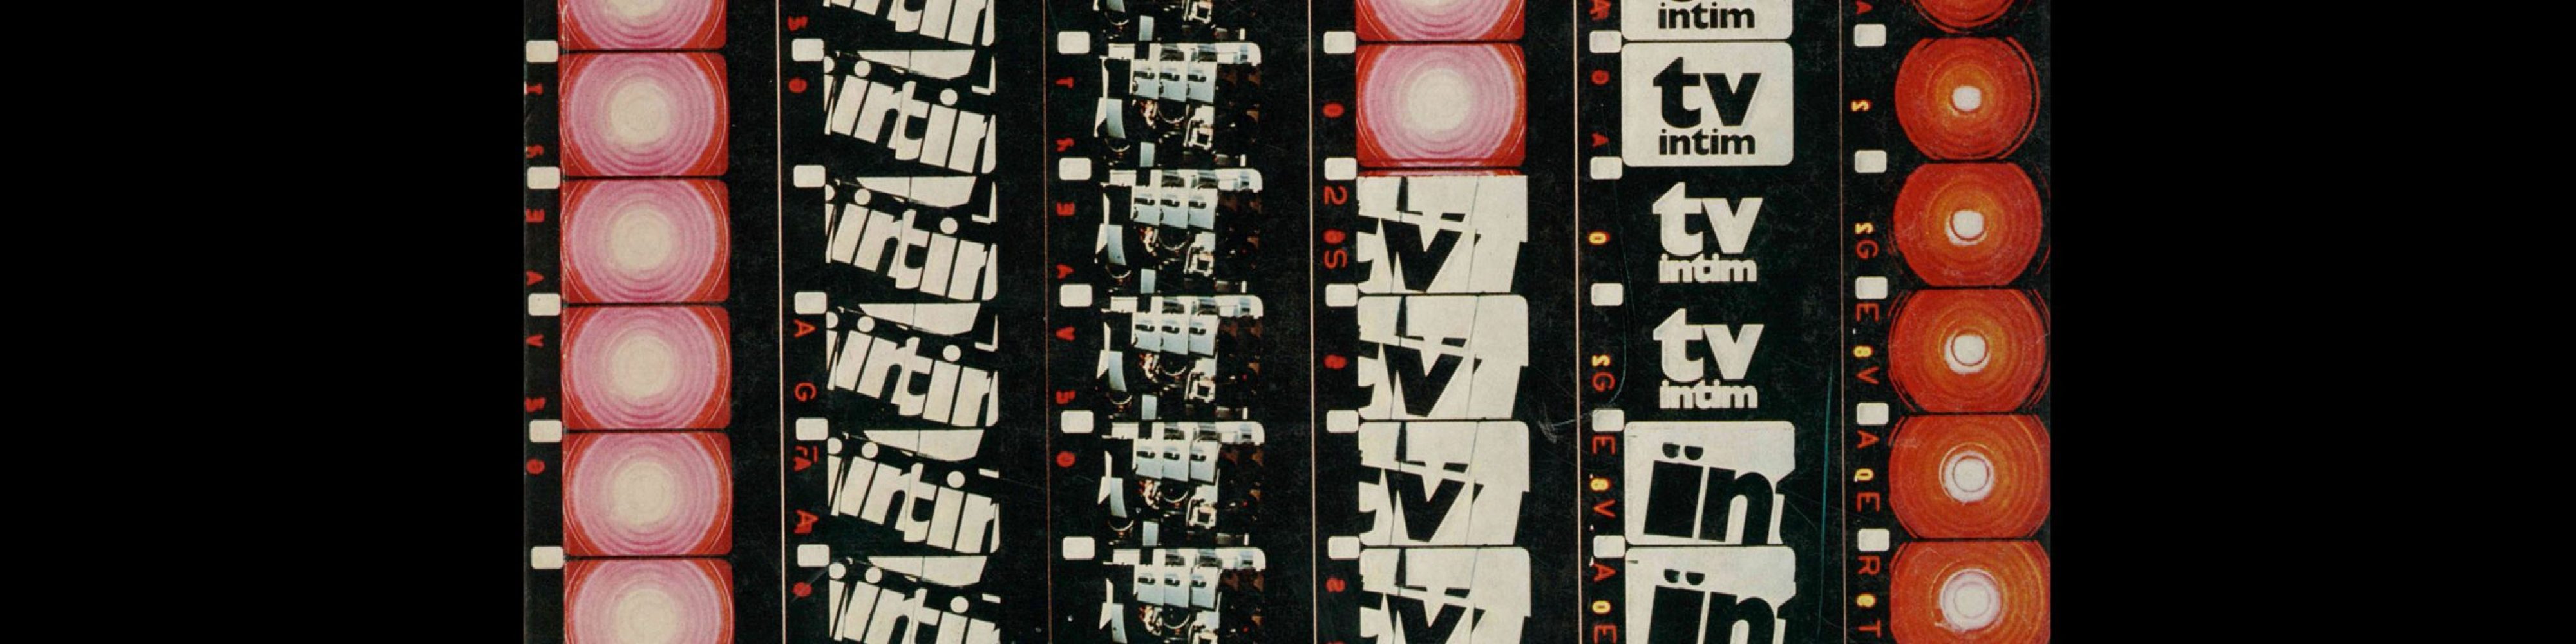 Novum Gebrauchsgraphik, 5, 1975. Cover design by Frieder Grindler + Dieter Zimmermann